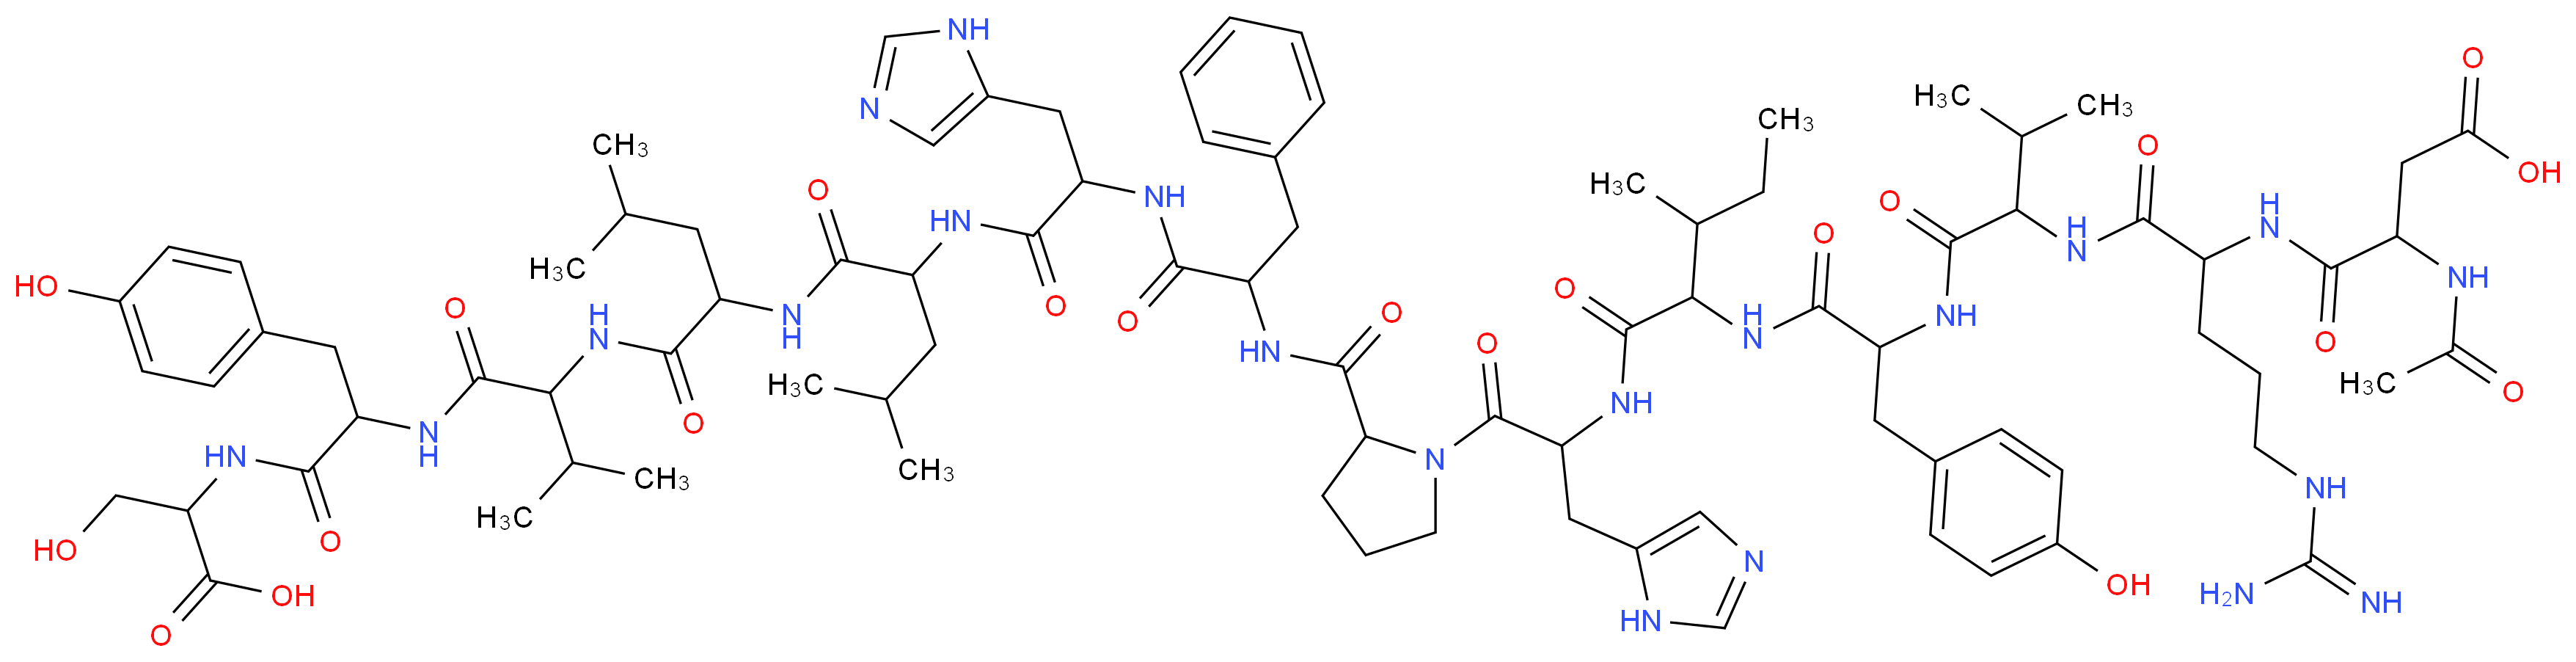 3-({4-carbamimidamido-1-[(1-{[1-({1-[(1-{2-[(1-{[1-({1-[(1-{[1-({1-[(1-carboxy-2-hydroxyethyl)carbamoyl]-2-(4-hydroxyphenyl)ethyl}carbamoyl)-2-methylpropyl]carbamoyl}-3-methylbutyl)carbamoyl]-3-methylbutyl}carbamoyl)-2-(1H-imidazol-5-yl)ethyl]carbamoyl}-2-phenylethyl)carbamoyl]pyrrolidin-1-yl}-3-(1H-imidazol-5-yl)-1-oxopropan-2-yl)carbamoyl]-2-methylbutyl}carbamoyl)-2-(4-hydroxyphenyl)ethyl]carbamoyl}-2-methylpropyl)carbamoyl]butyl}carbamoyl)-3-acetamidopropanoic acid_分子结构_CAS_66641-26-7